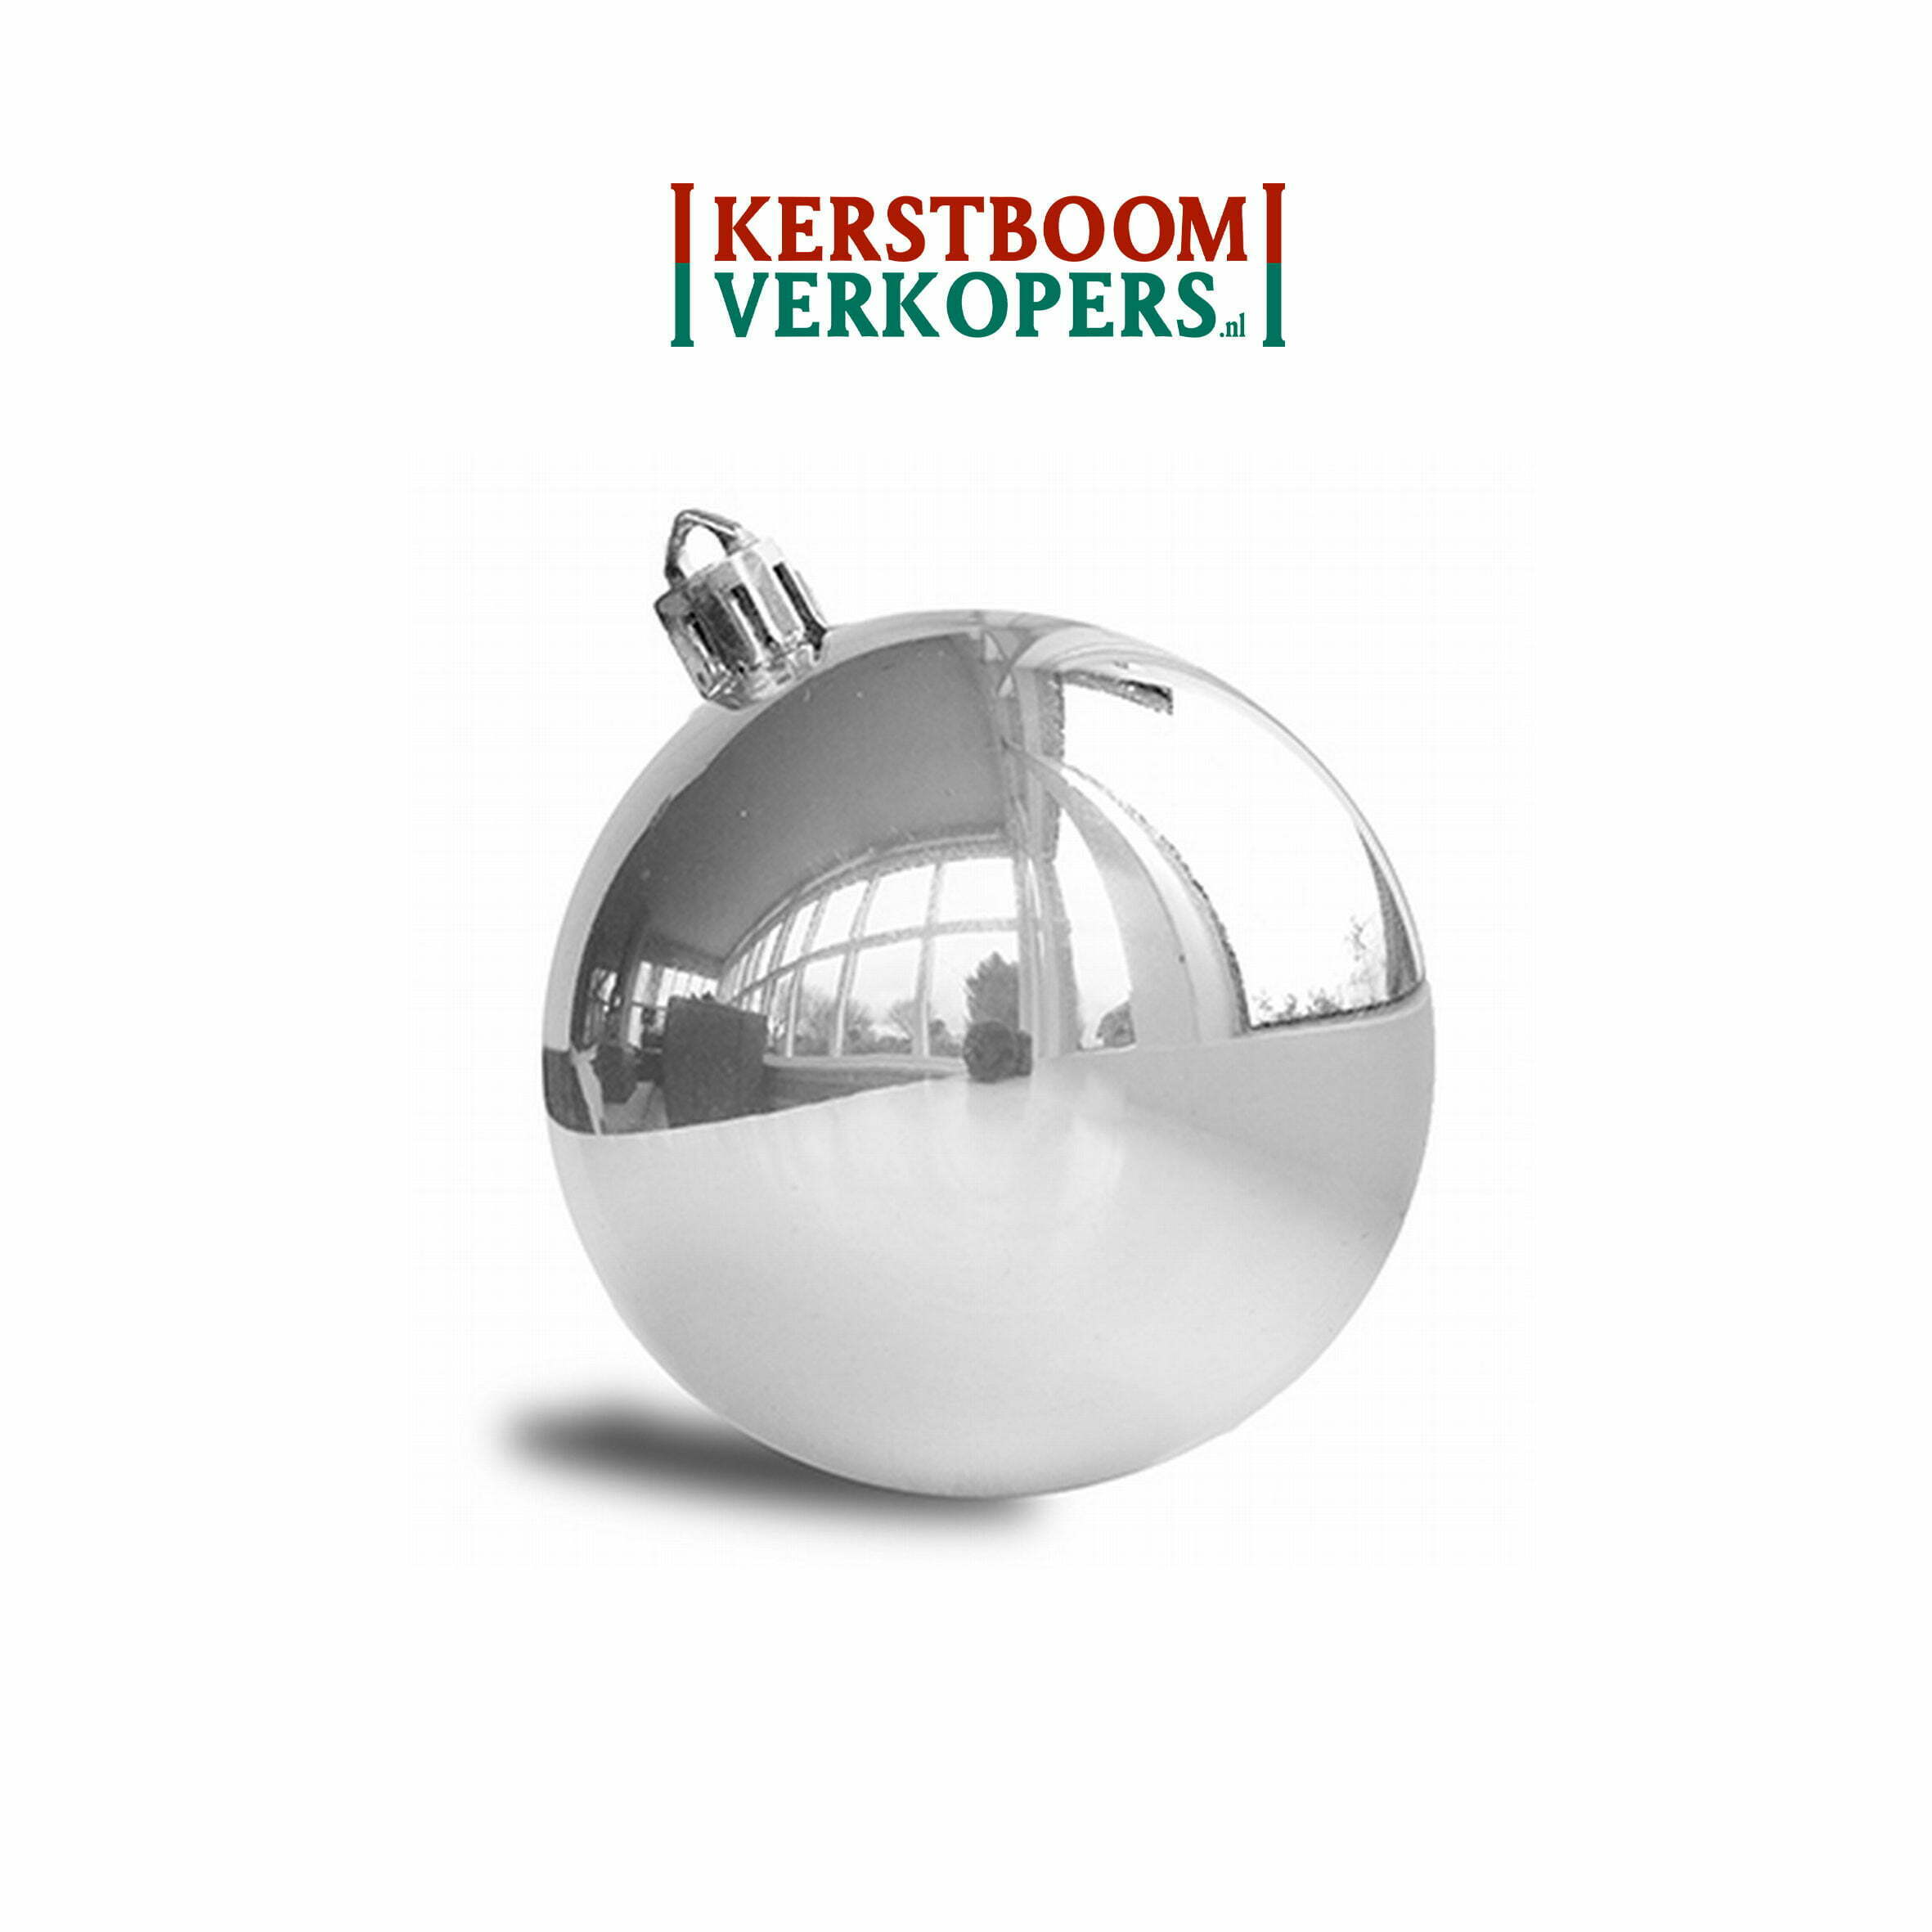 weg galblaas chef Kerstballen zilver (glans) - 8cm - €99,- per st. - Kerstboomverkopers.nl